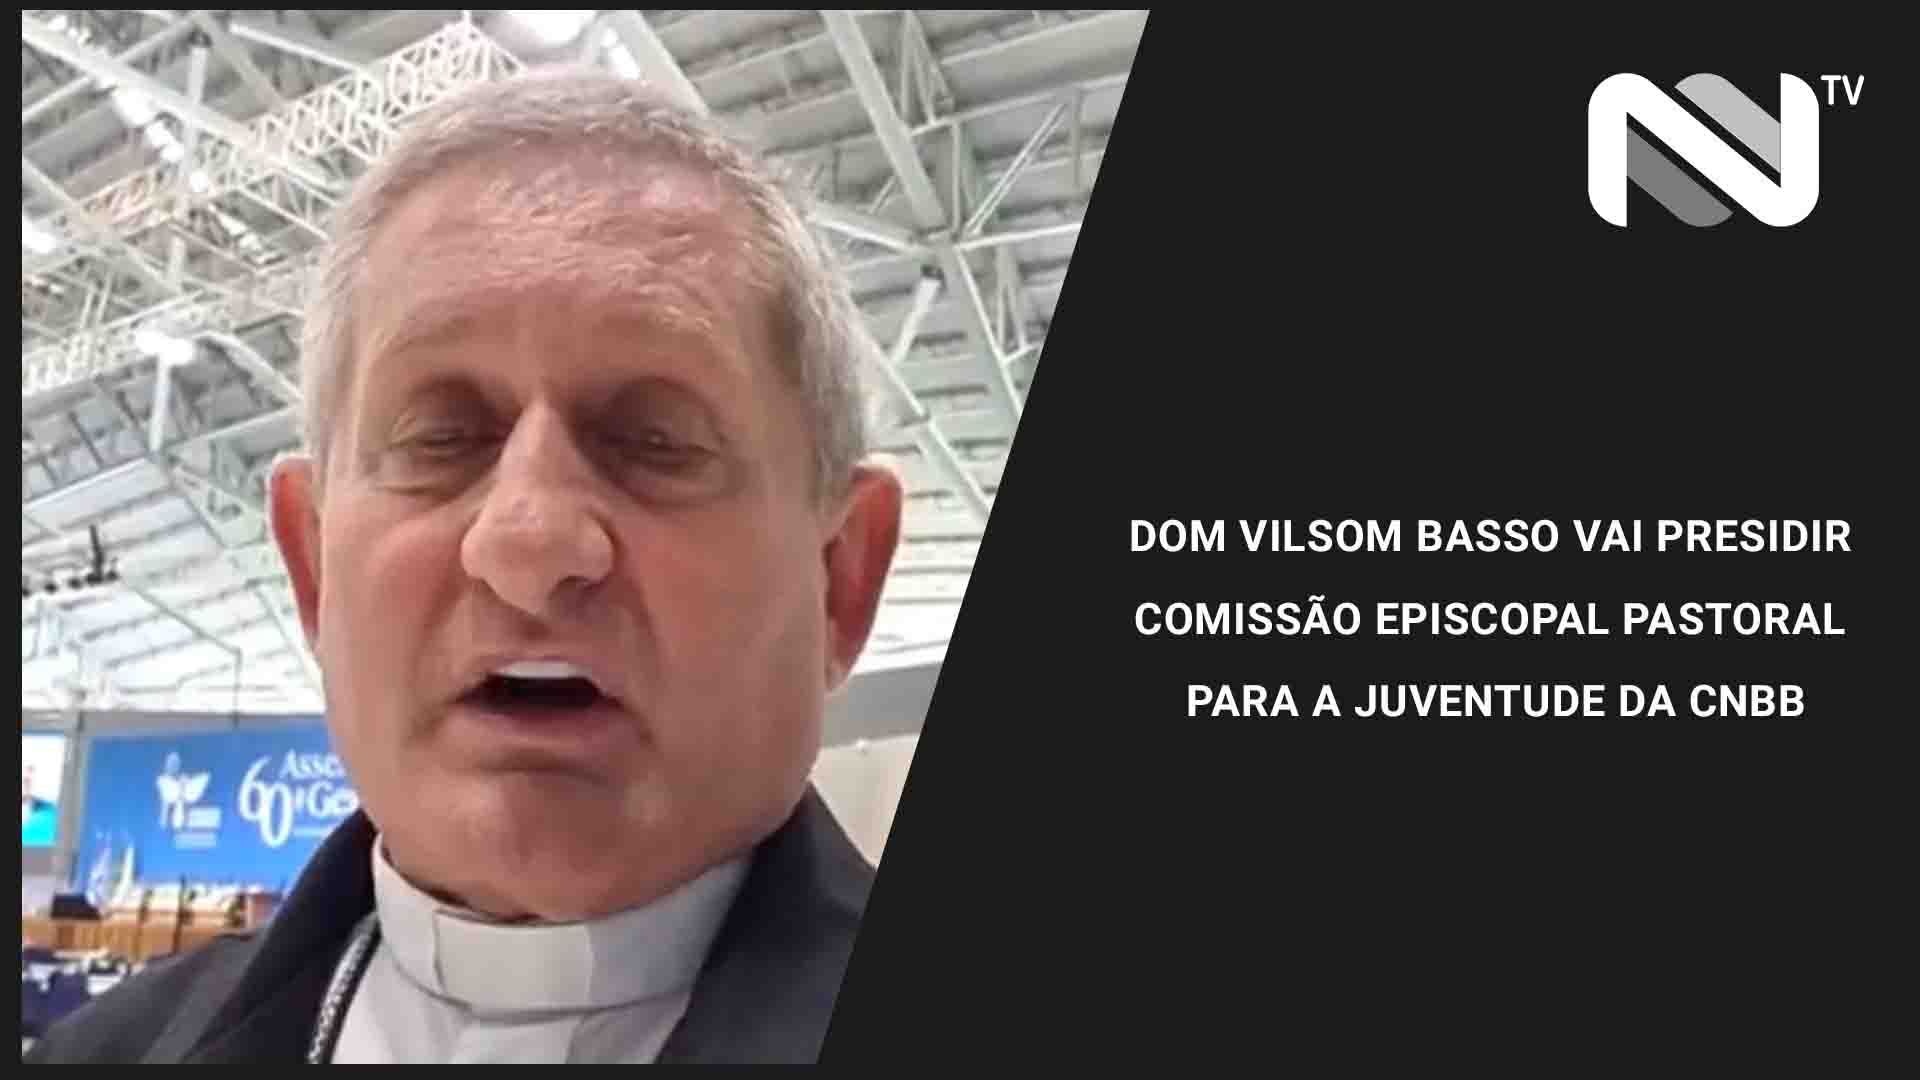 Dom Vilsom Basso vai presidir Comissão Episcopal Pastoral para a Juventude da CNBB